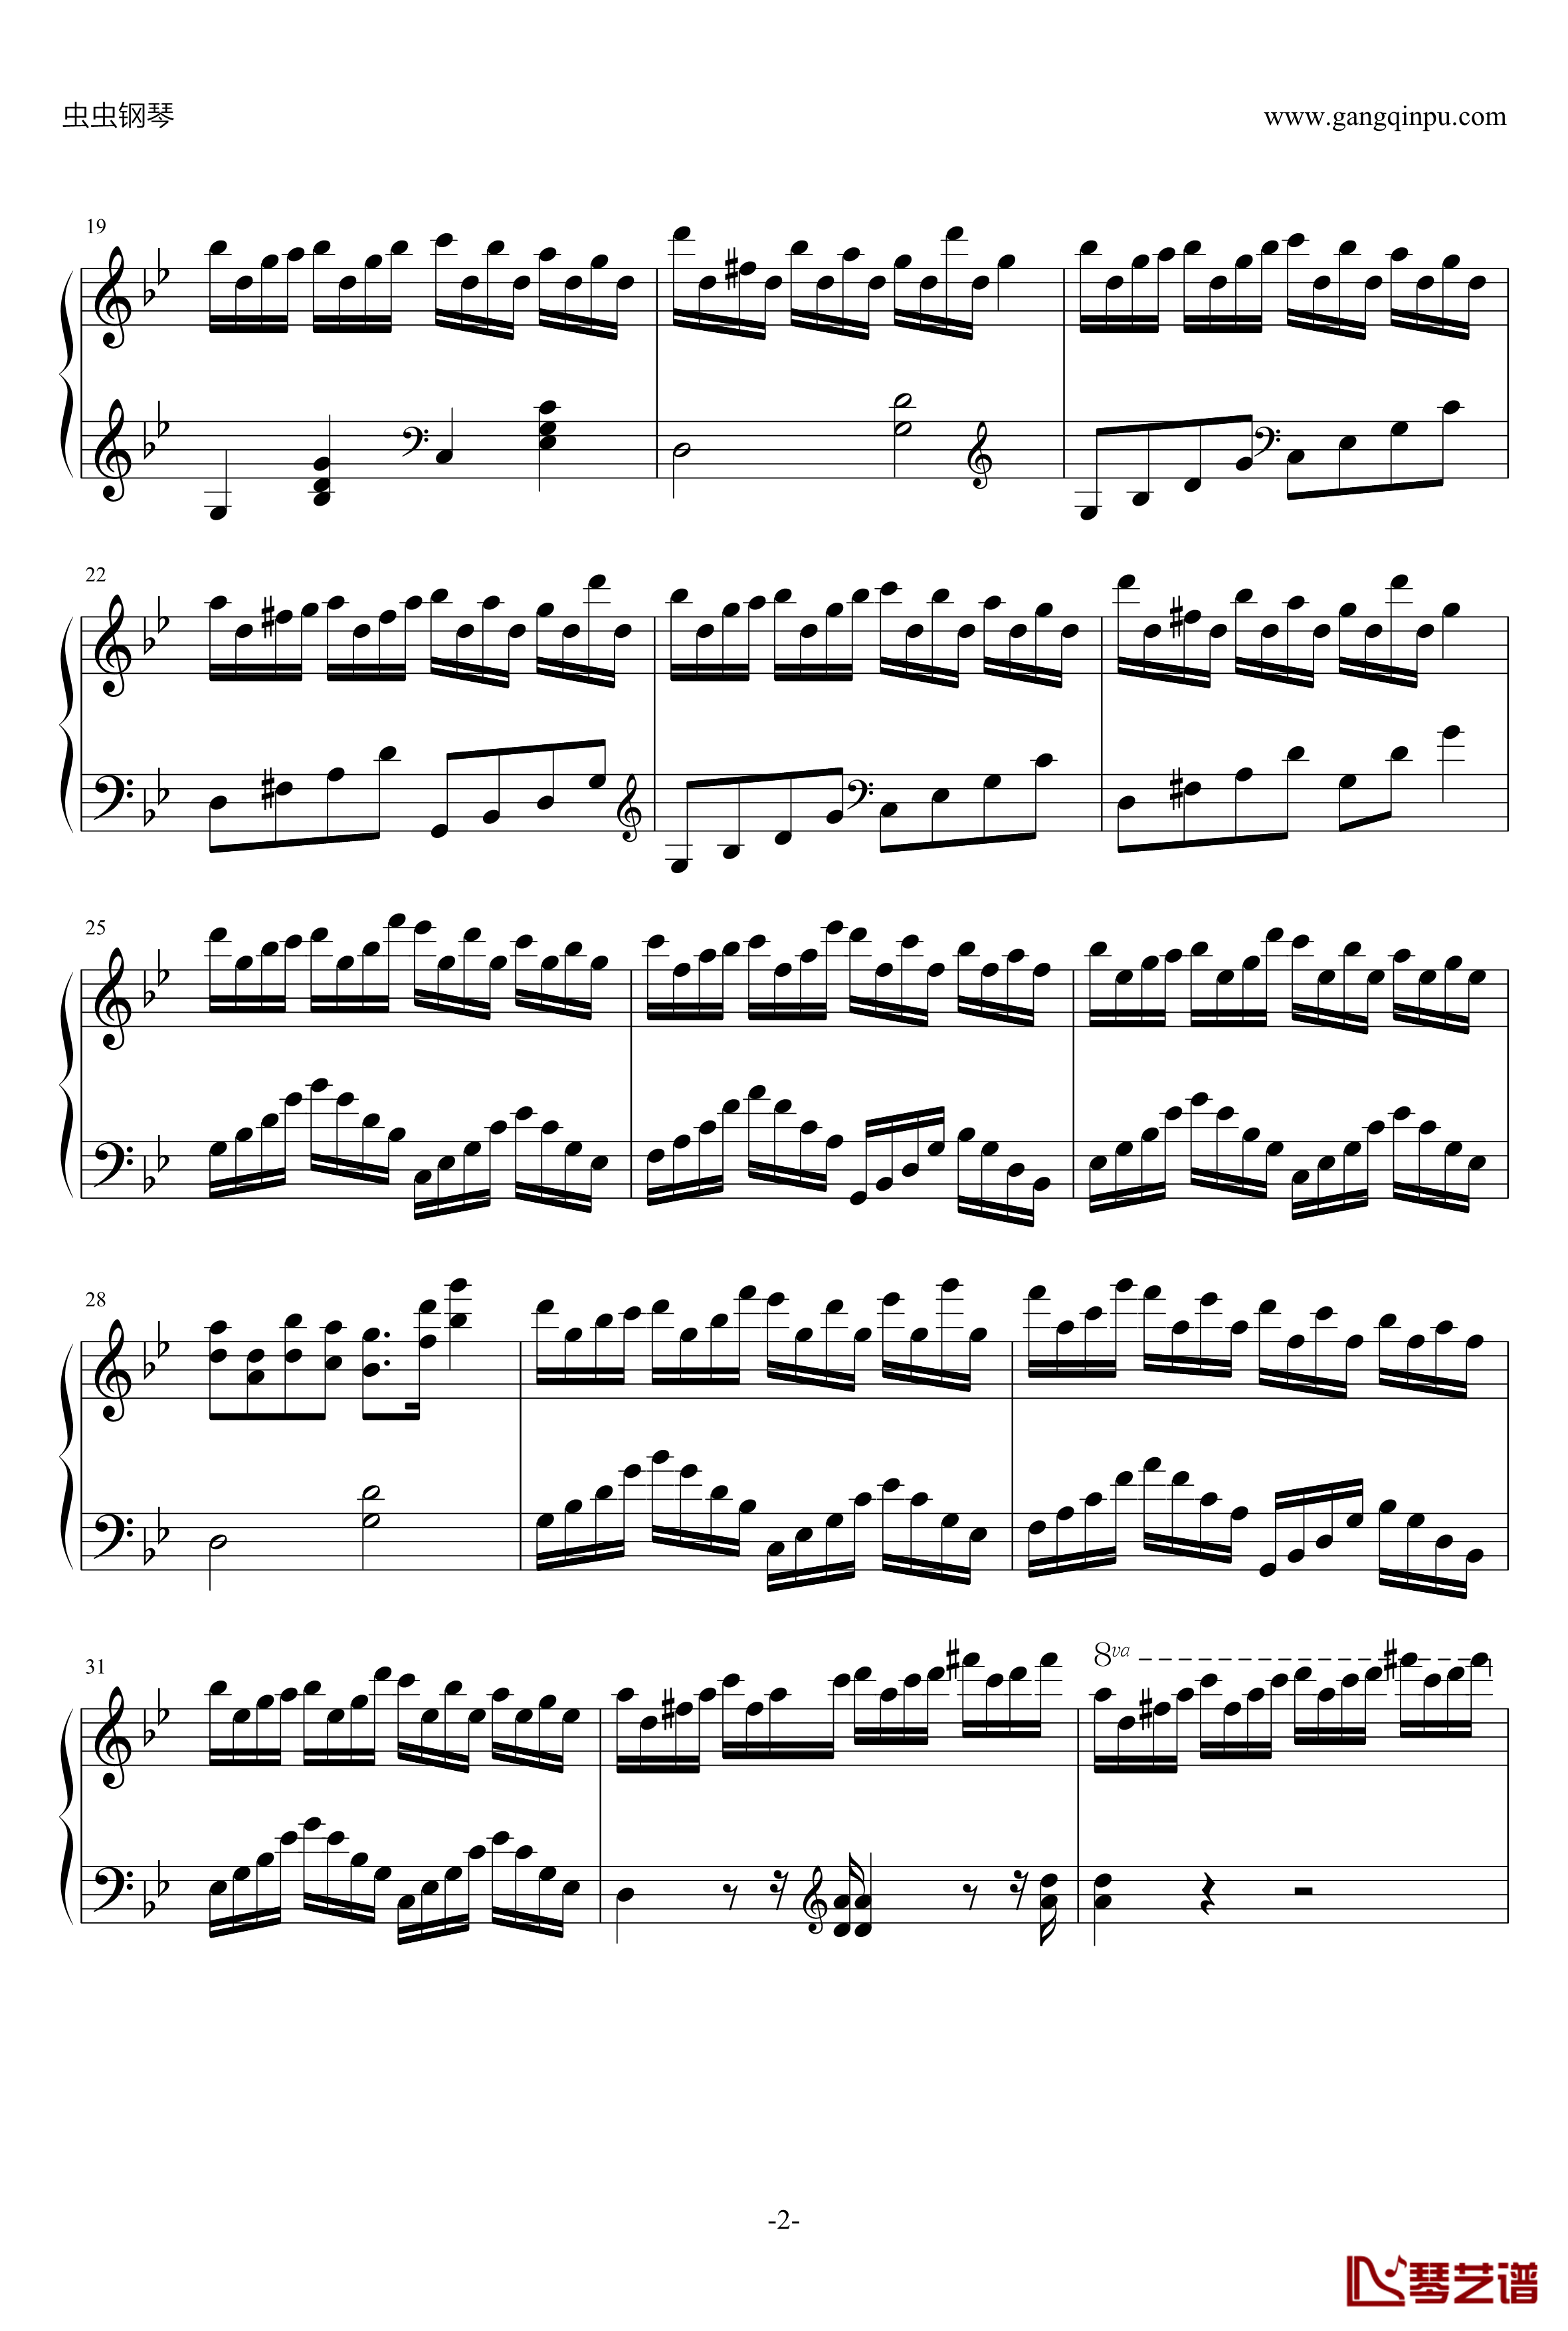 克罗地亚狂想曲钢琴谱-移调修改版-马克西姆-Maksim·Mrvica2